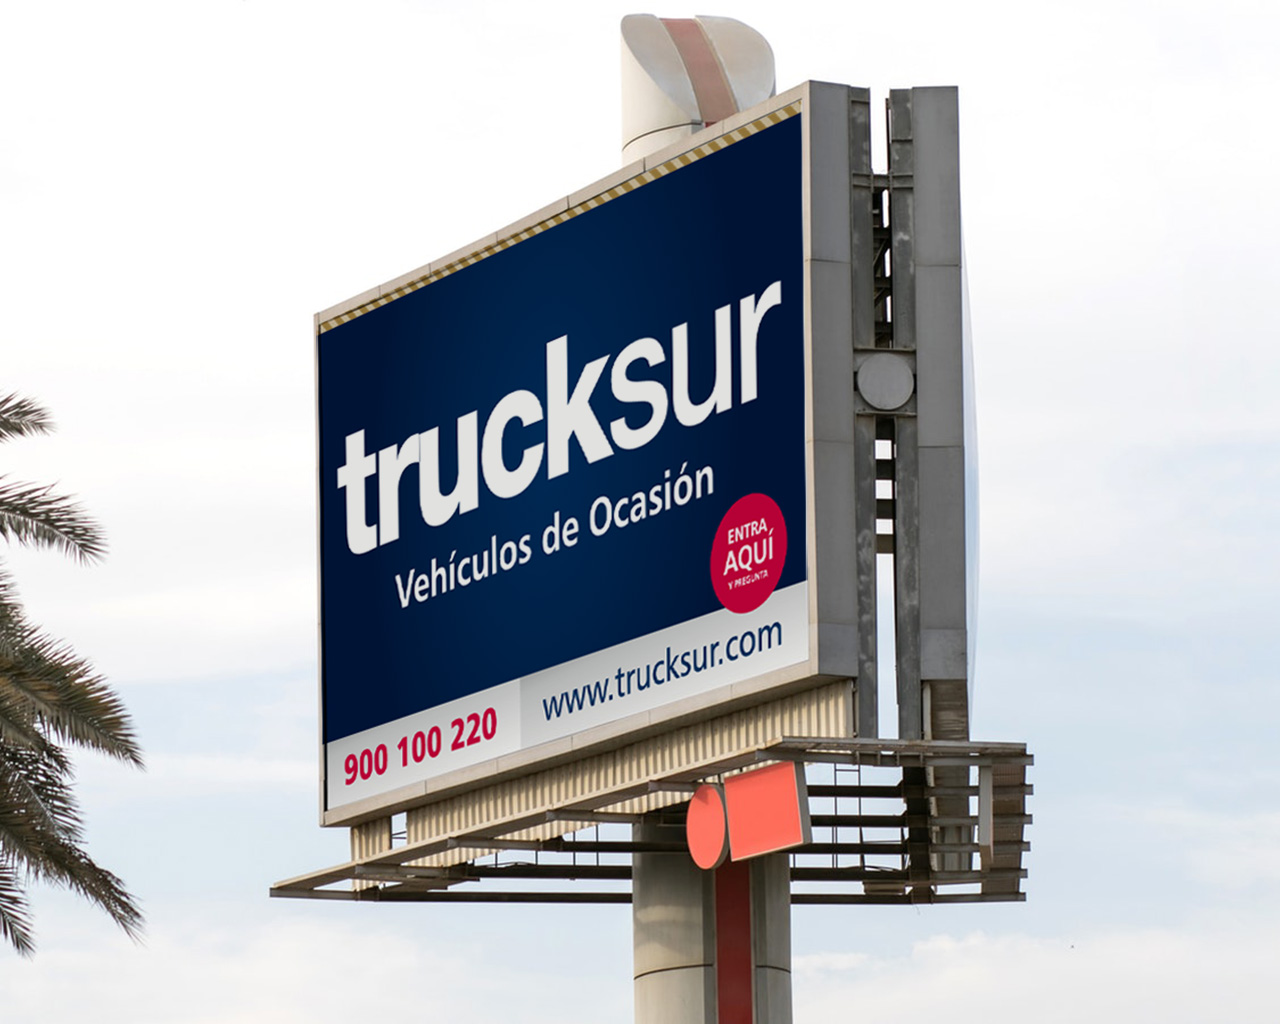 Valla publicitaria Trucksur